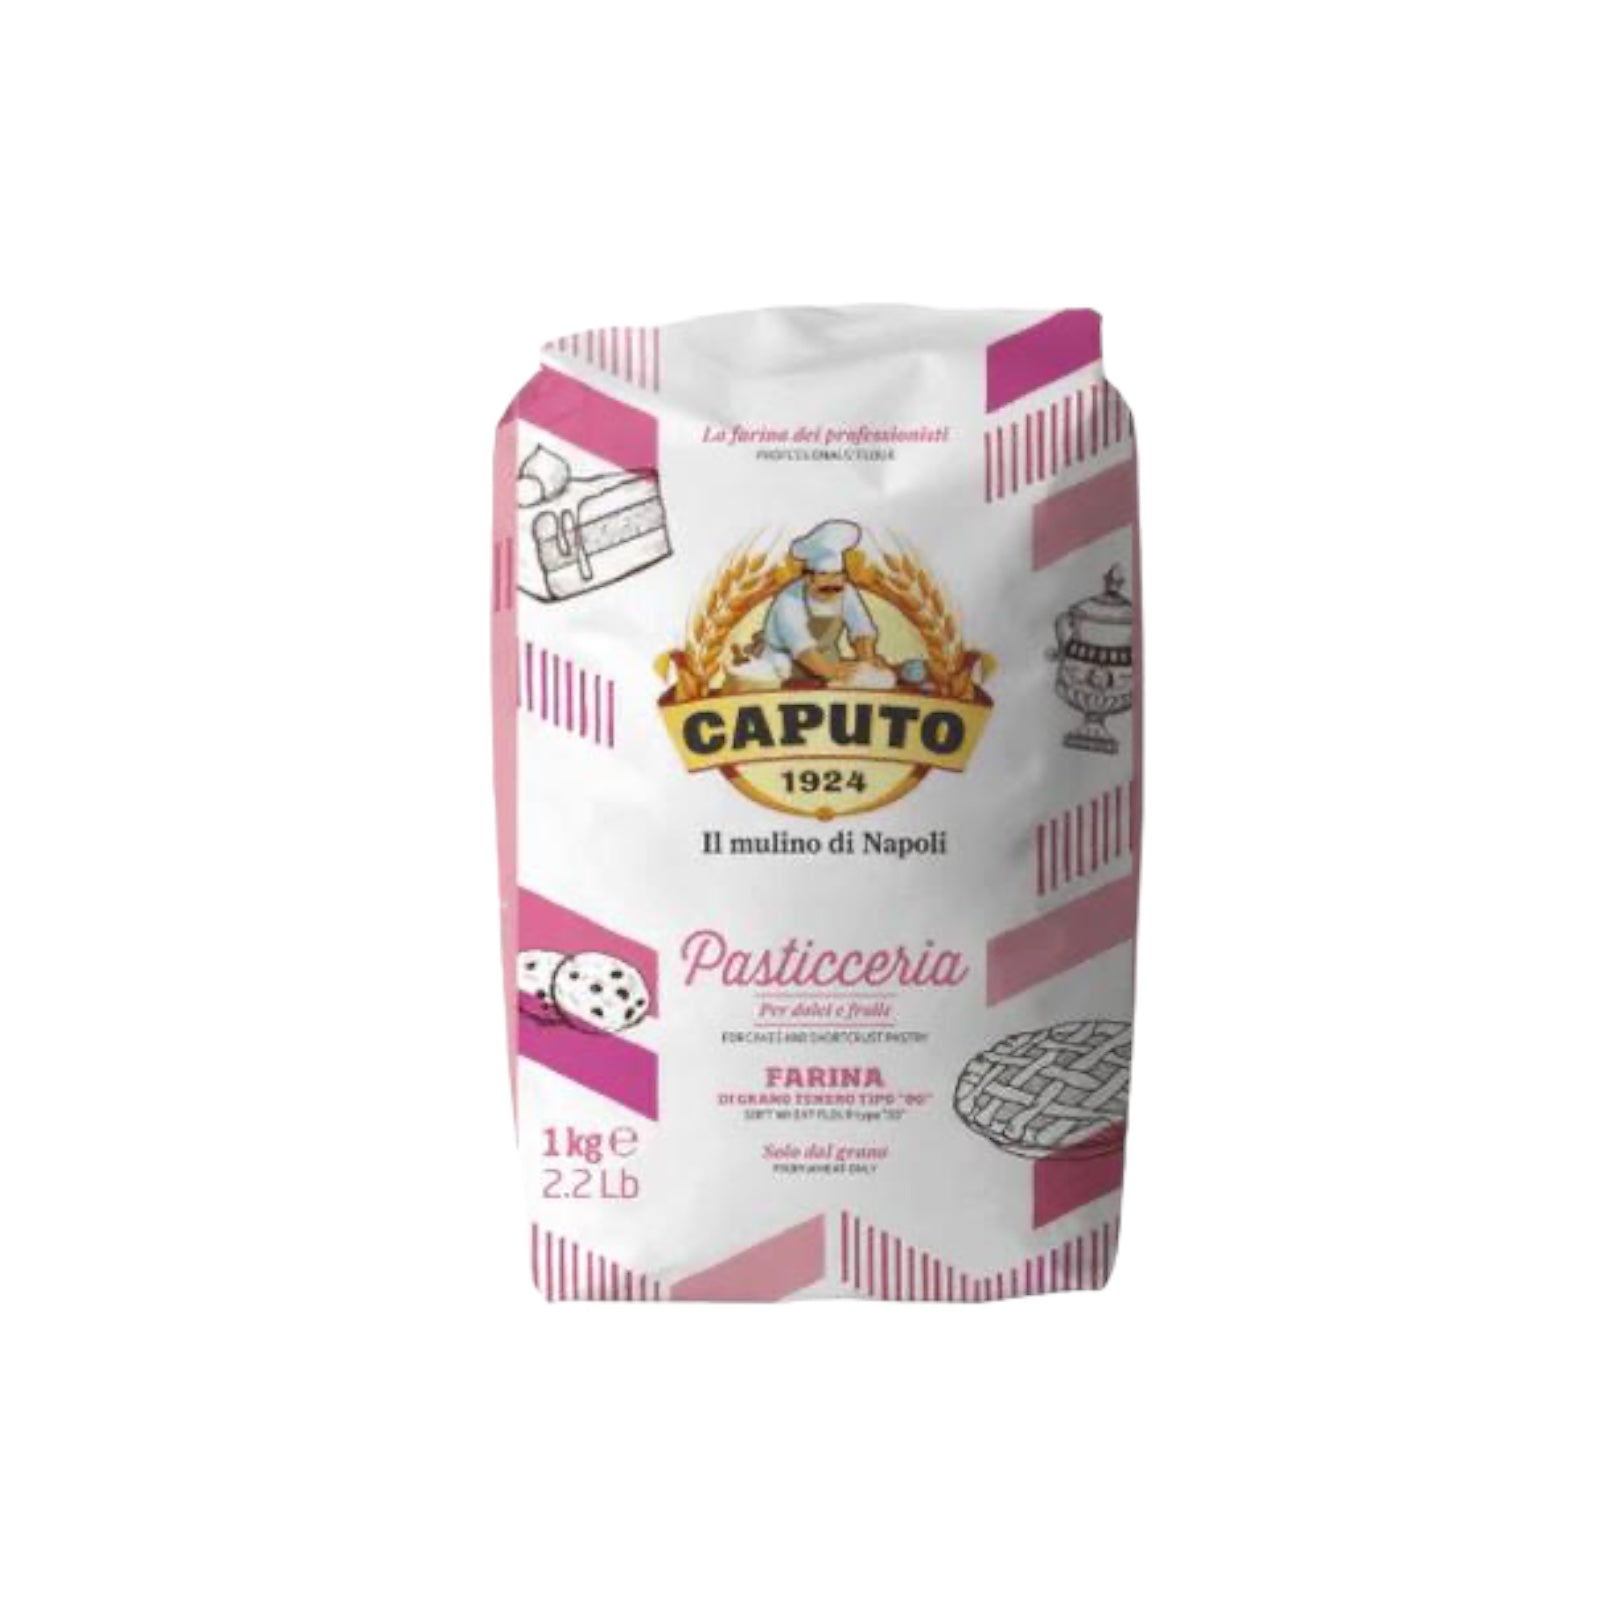 Caputo Flour Pasticceria Type “00” 2.2lb – Made In Eatalia